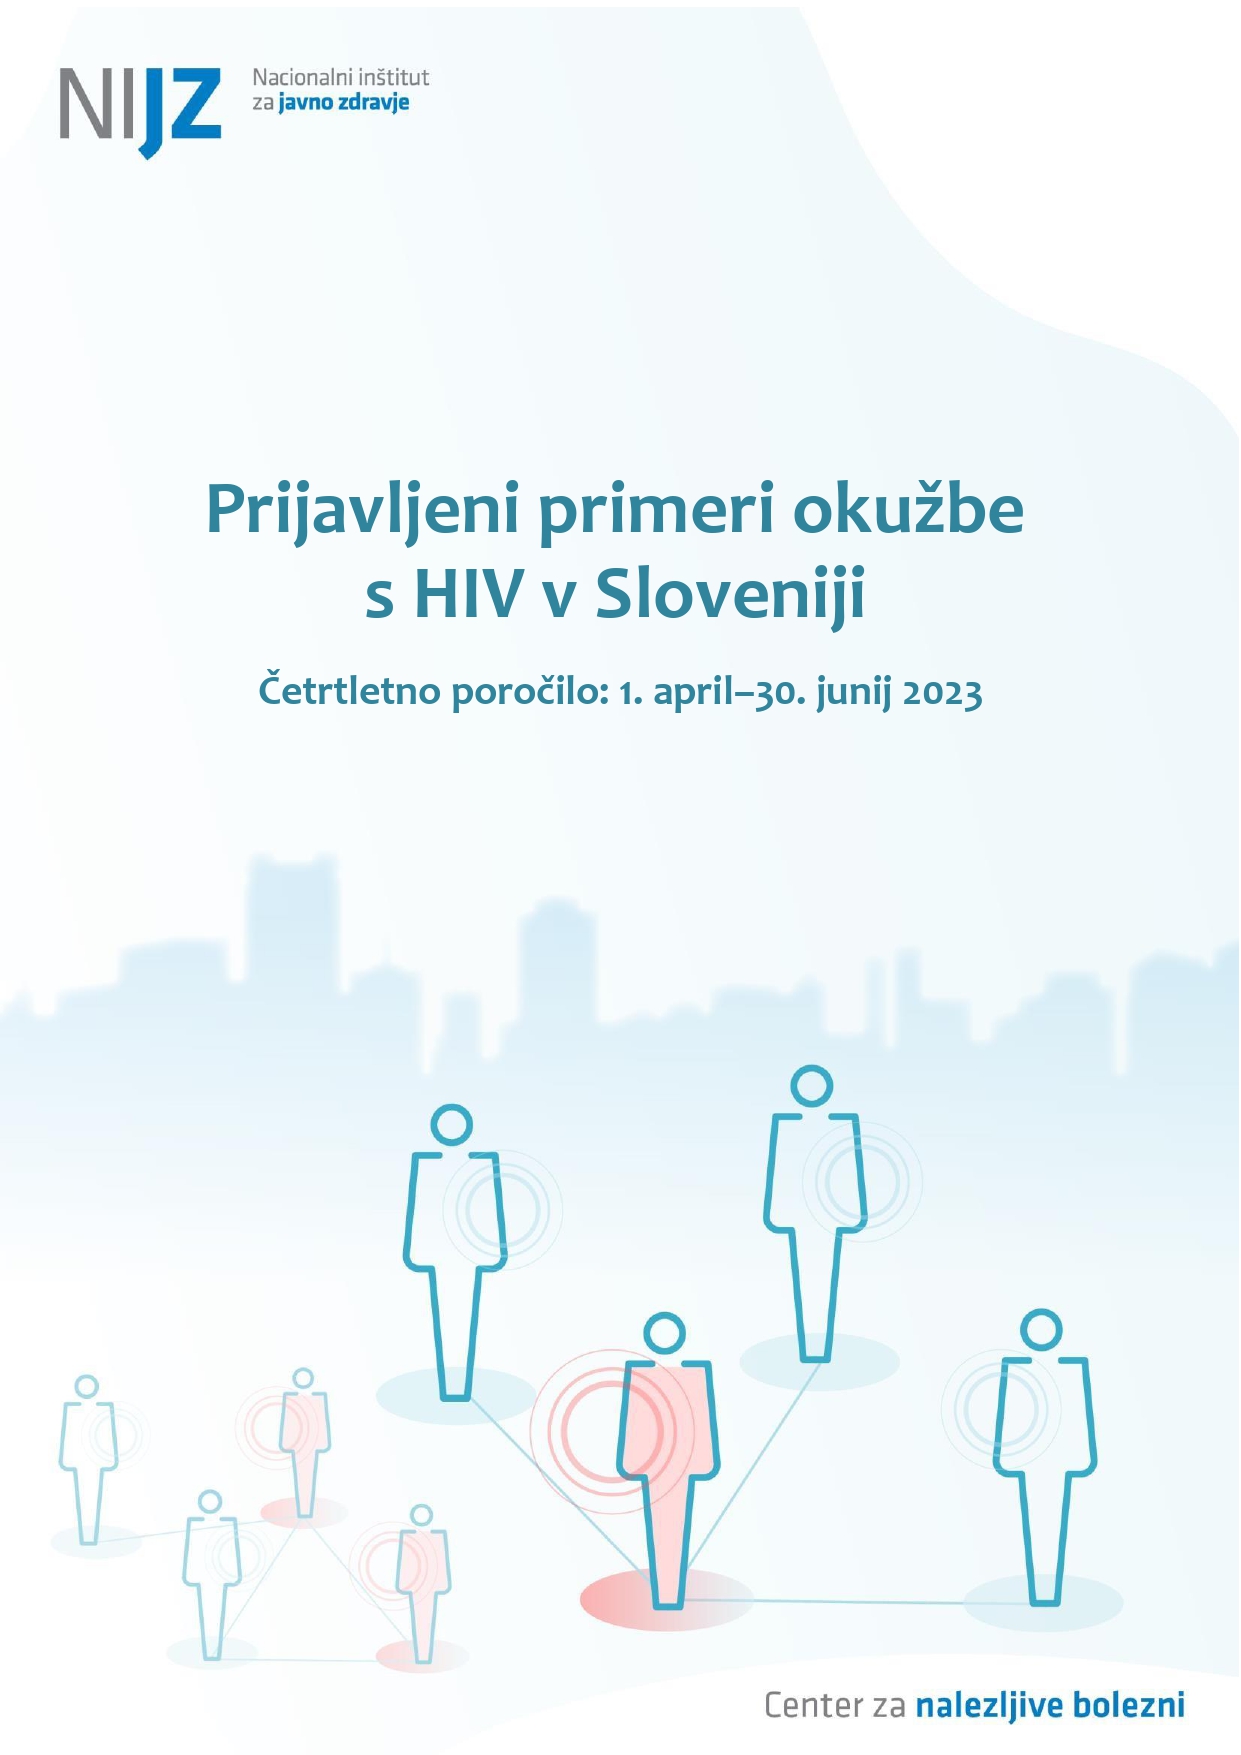 Prijavljeni primeri okužbe s HIV v Sloveniji, četrtletno poročilo, 1. april–30. junij 2023